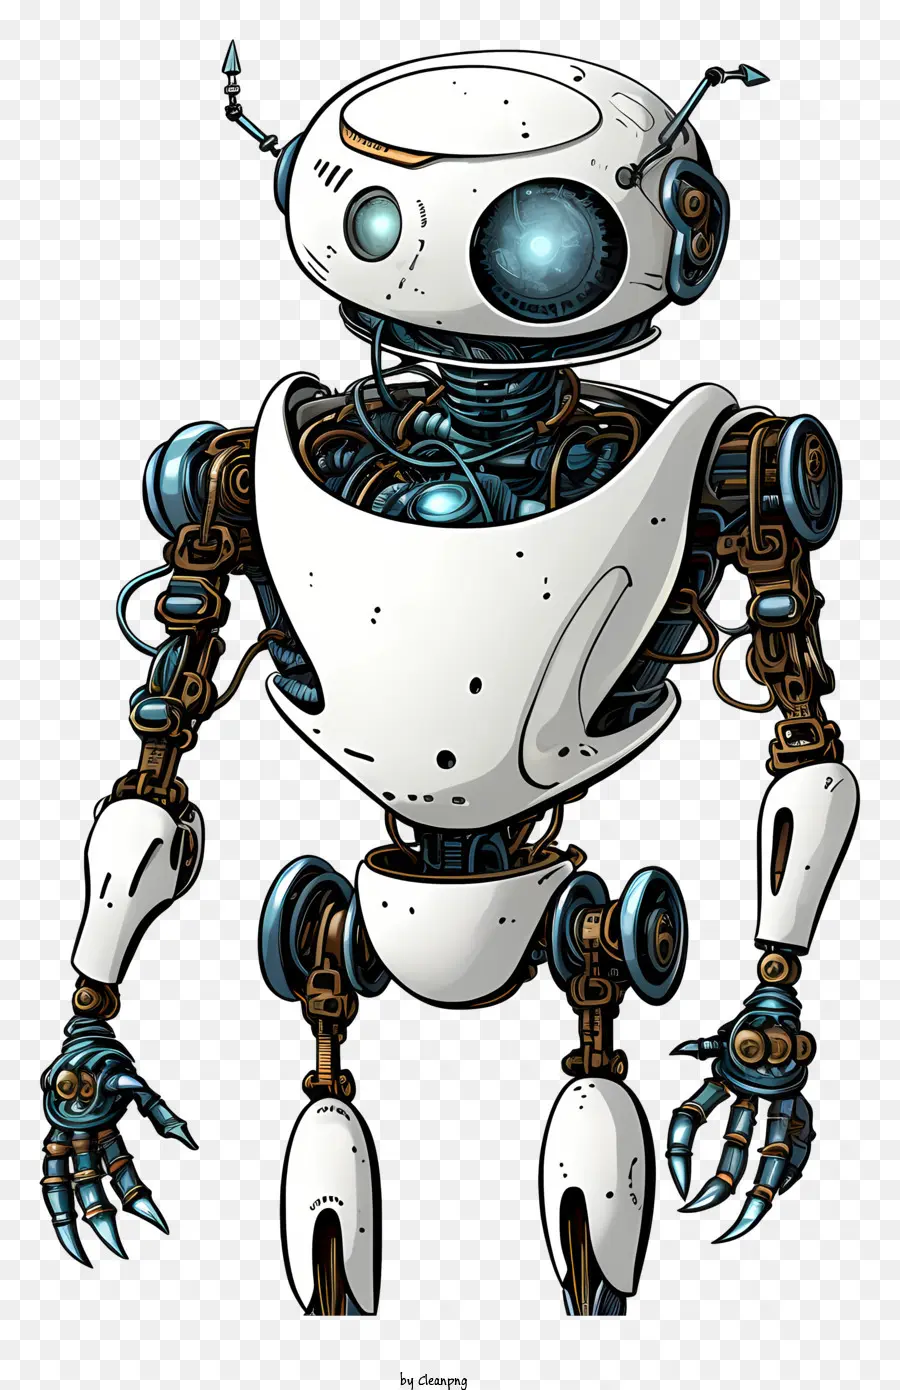 Roboter zwei Beine Silber und blaue zylindrische Form neutraler Pose - Ein Roboter, der auf zwei Beinen steht, neutrale Pose